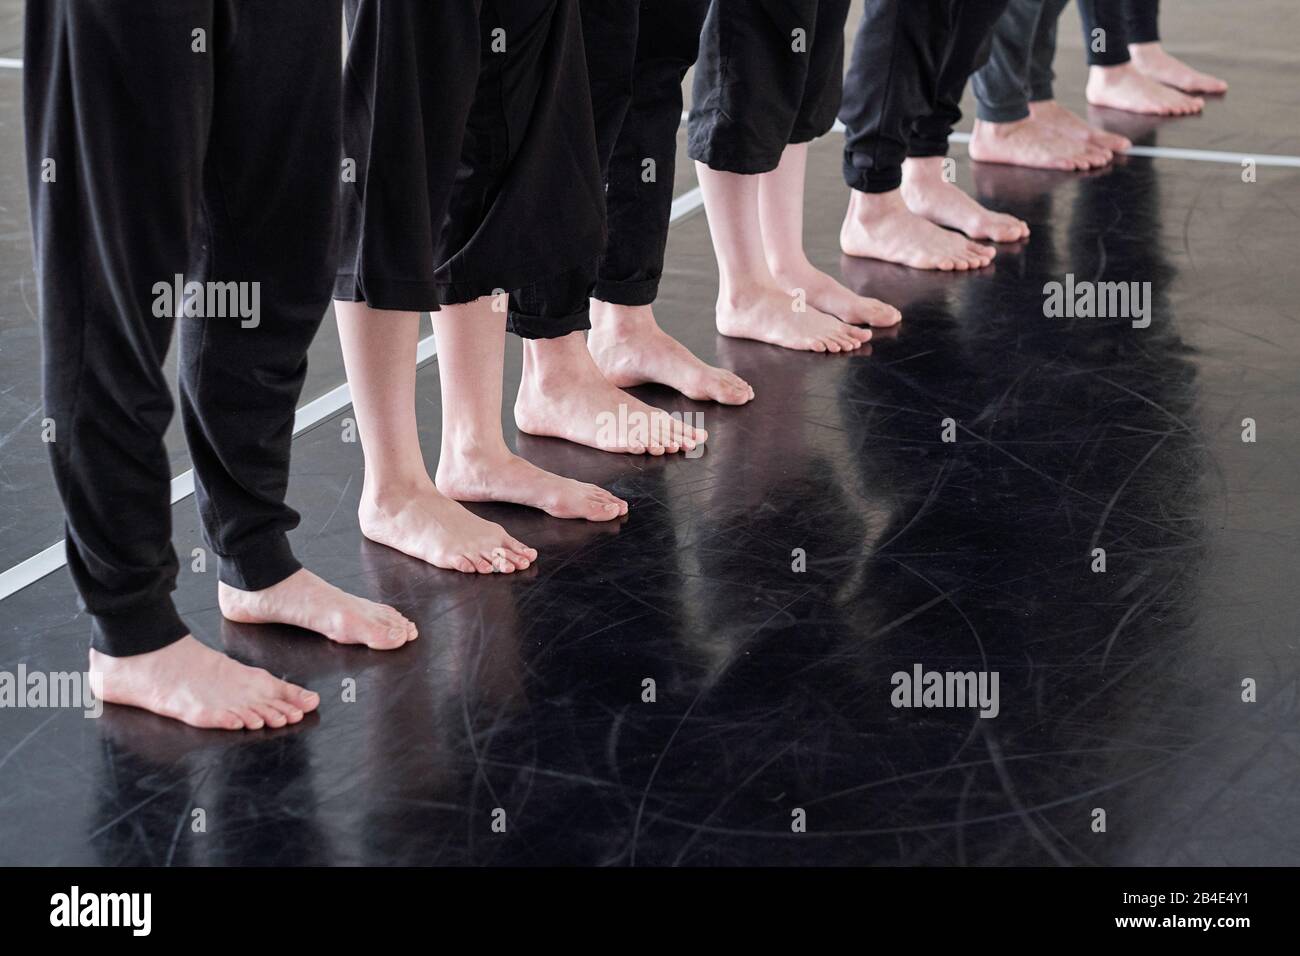 Beinreihe von barfuß-jungen Tänzern in schwarzen Hosen, die auf dem Boden des Tanzstudios stehen, während sie beim Training trainieren Stockfoto